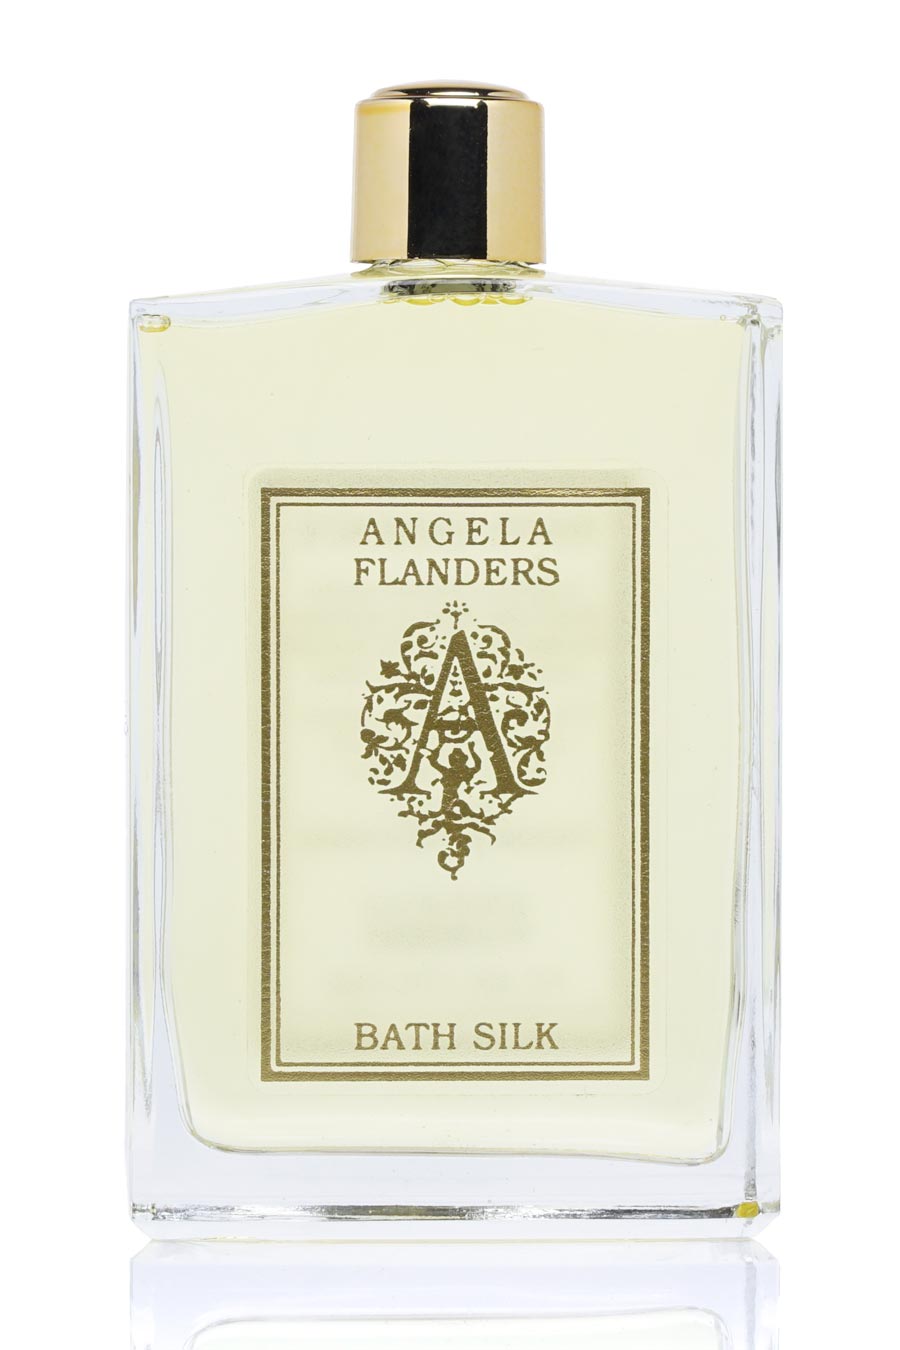 Angela Flanders Ottoman Bath Silk 100ml